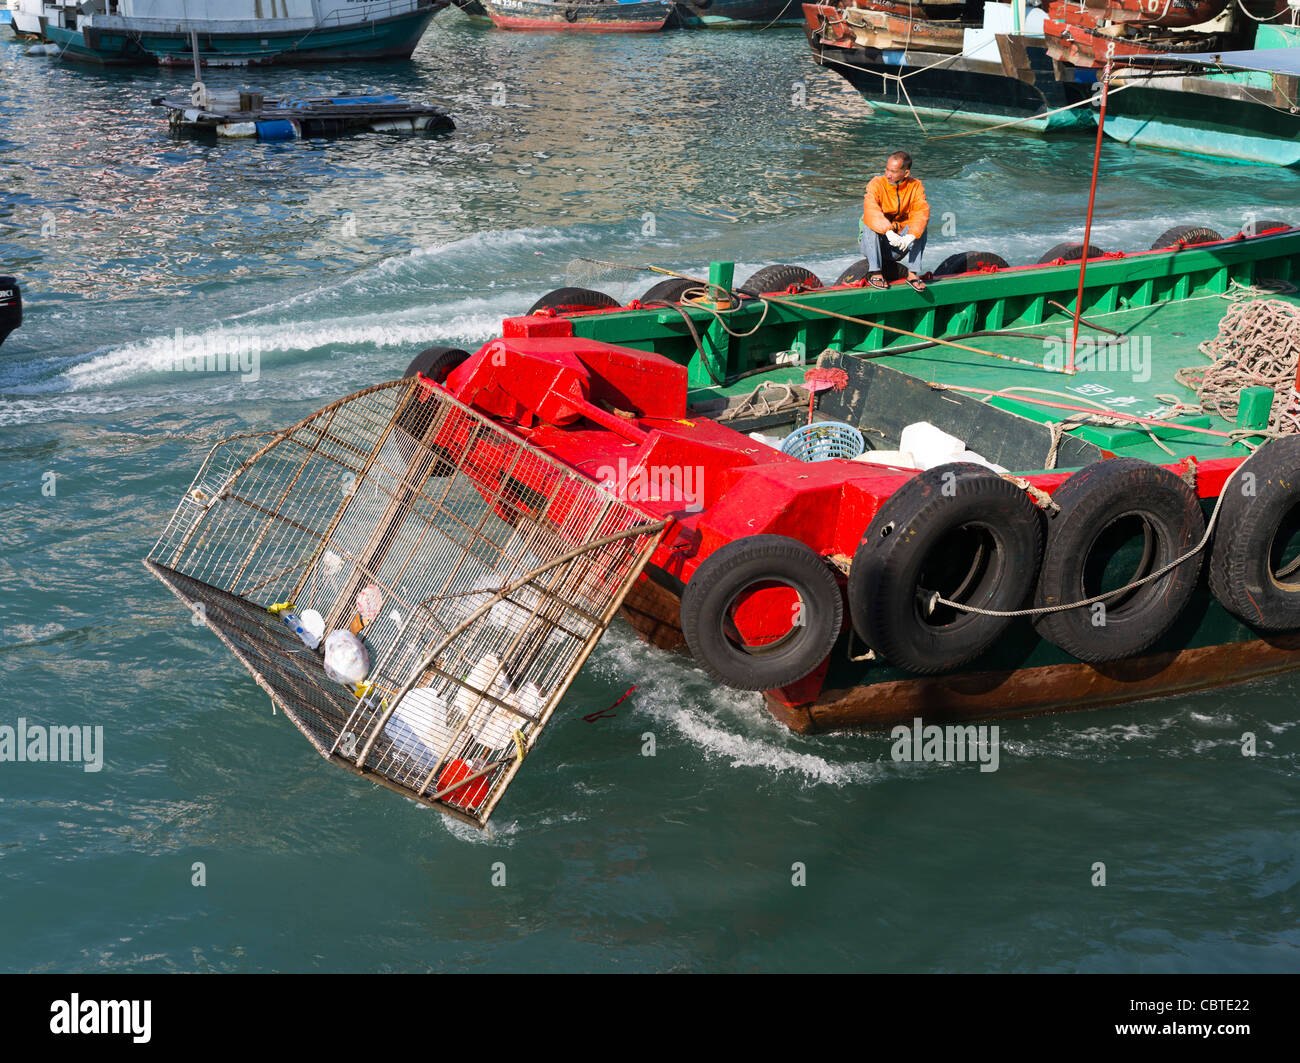 Aberdeen Harbour dh flotsam ABERDEEN bateau de dragage de HONG KONG environnement ordures nettoyage pour collecter l'eau, nettoyer la litière Banque D'Images